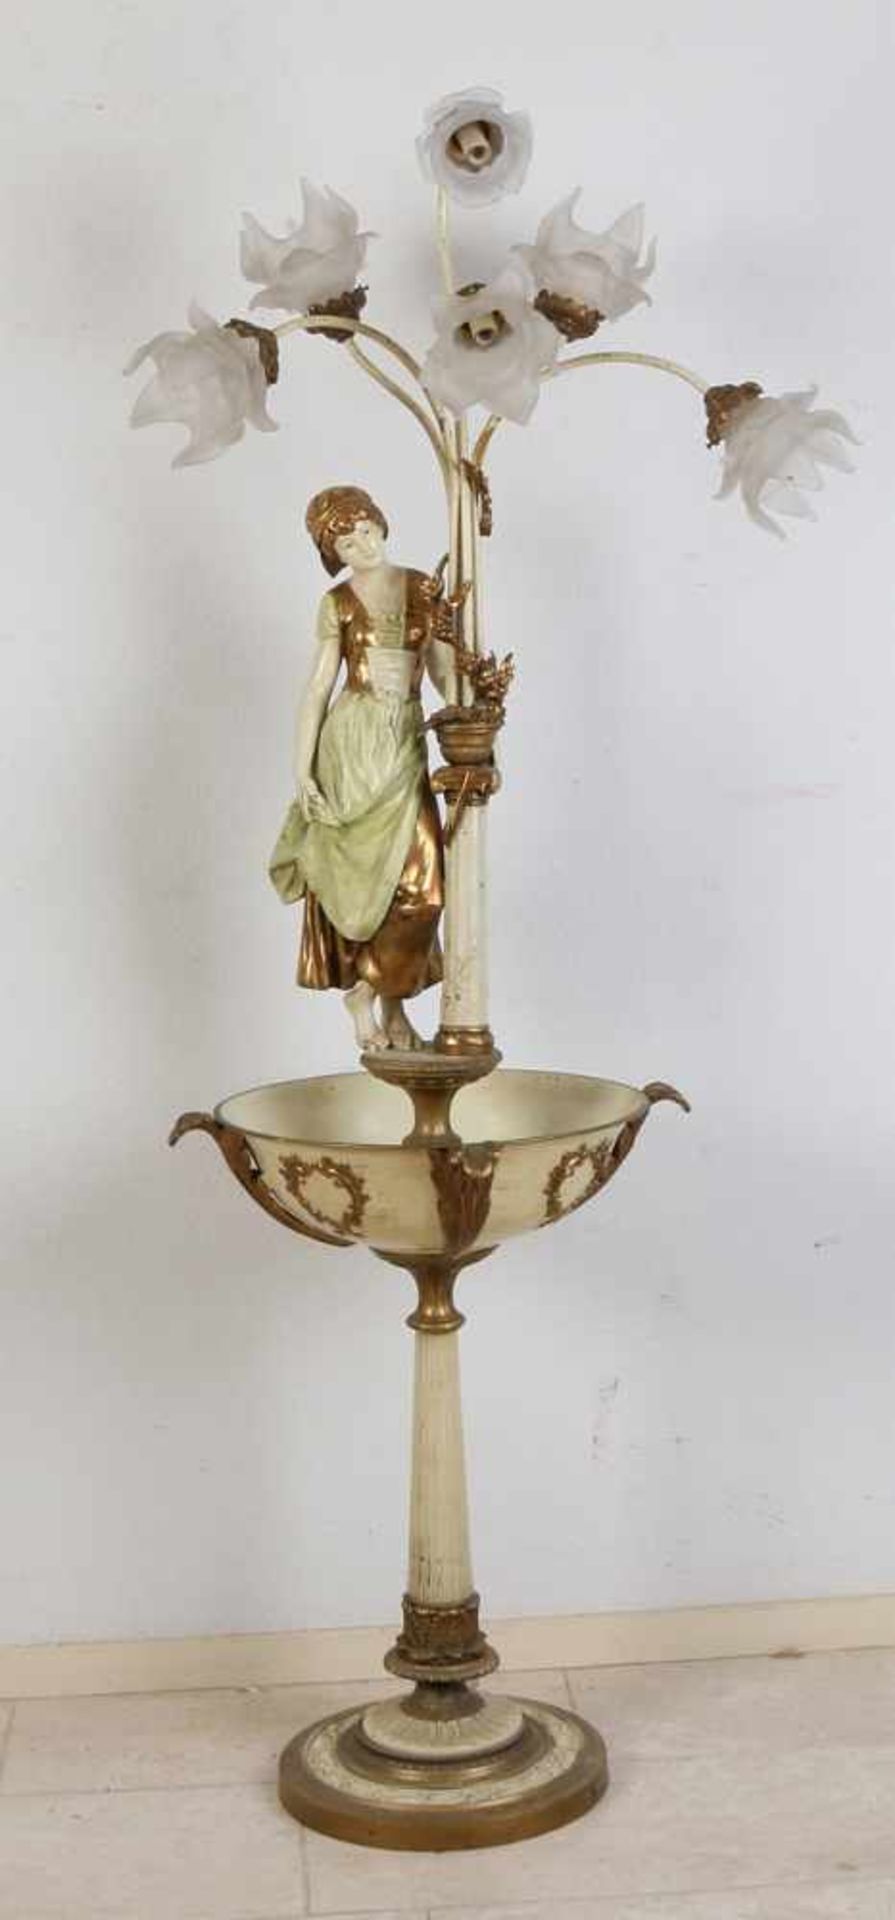 Große polychrome Metall-Stehlampe mit Jardiniere und Lady. Um 1900. Abmessungen: H 166 x Ø 43 cm.